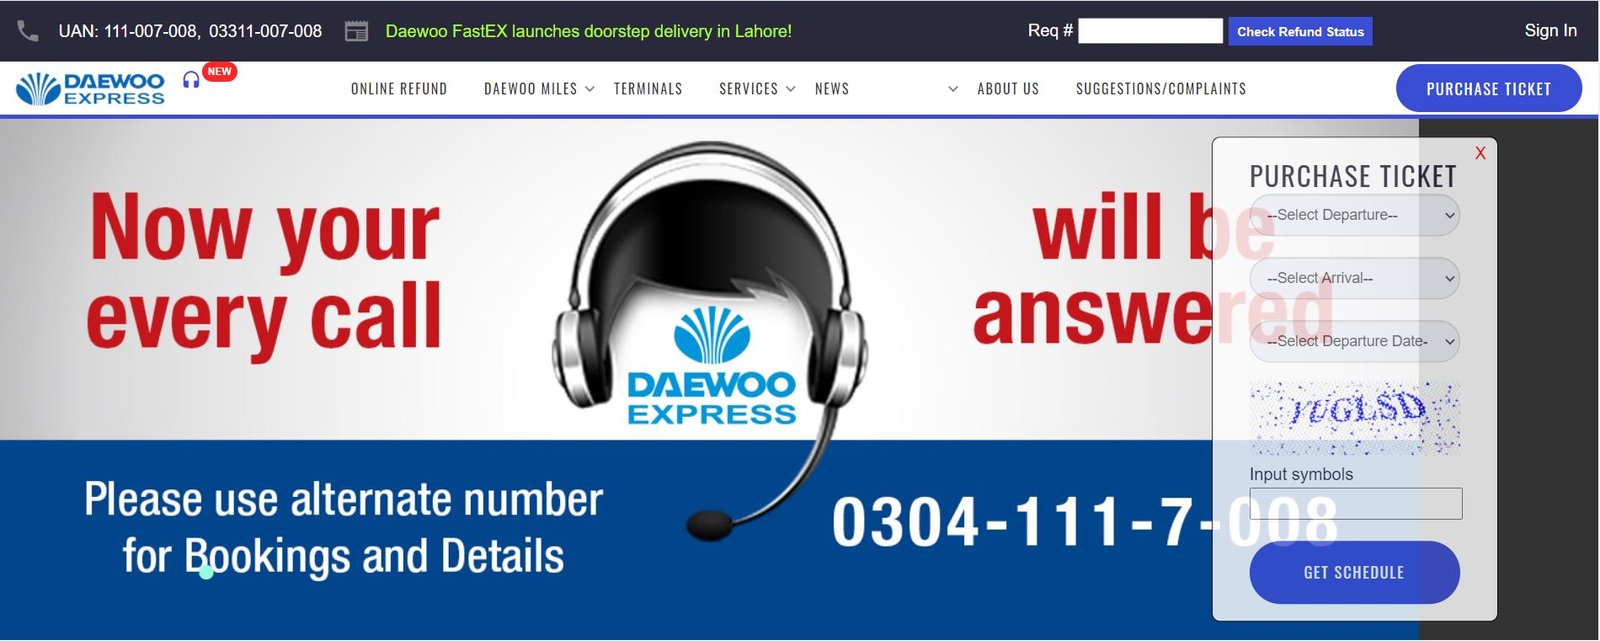 daewoo express online booking website